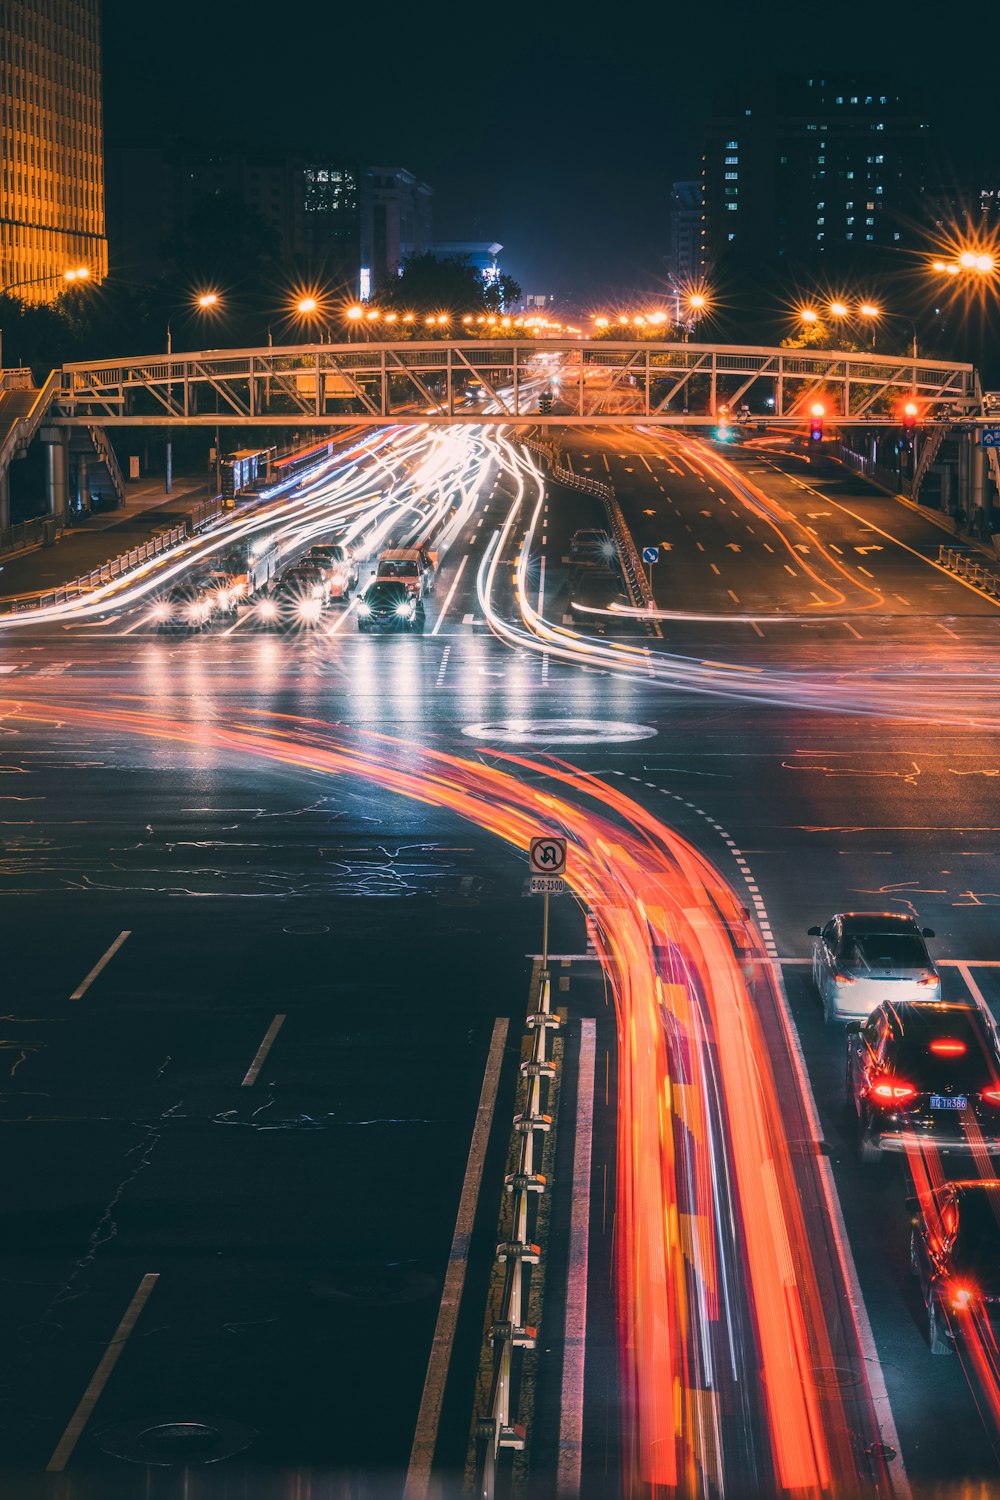 Photographie en accéléré de voitures sur la route pendant la nuit